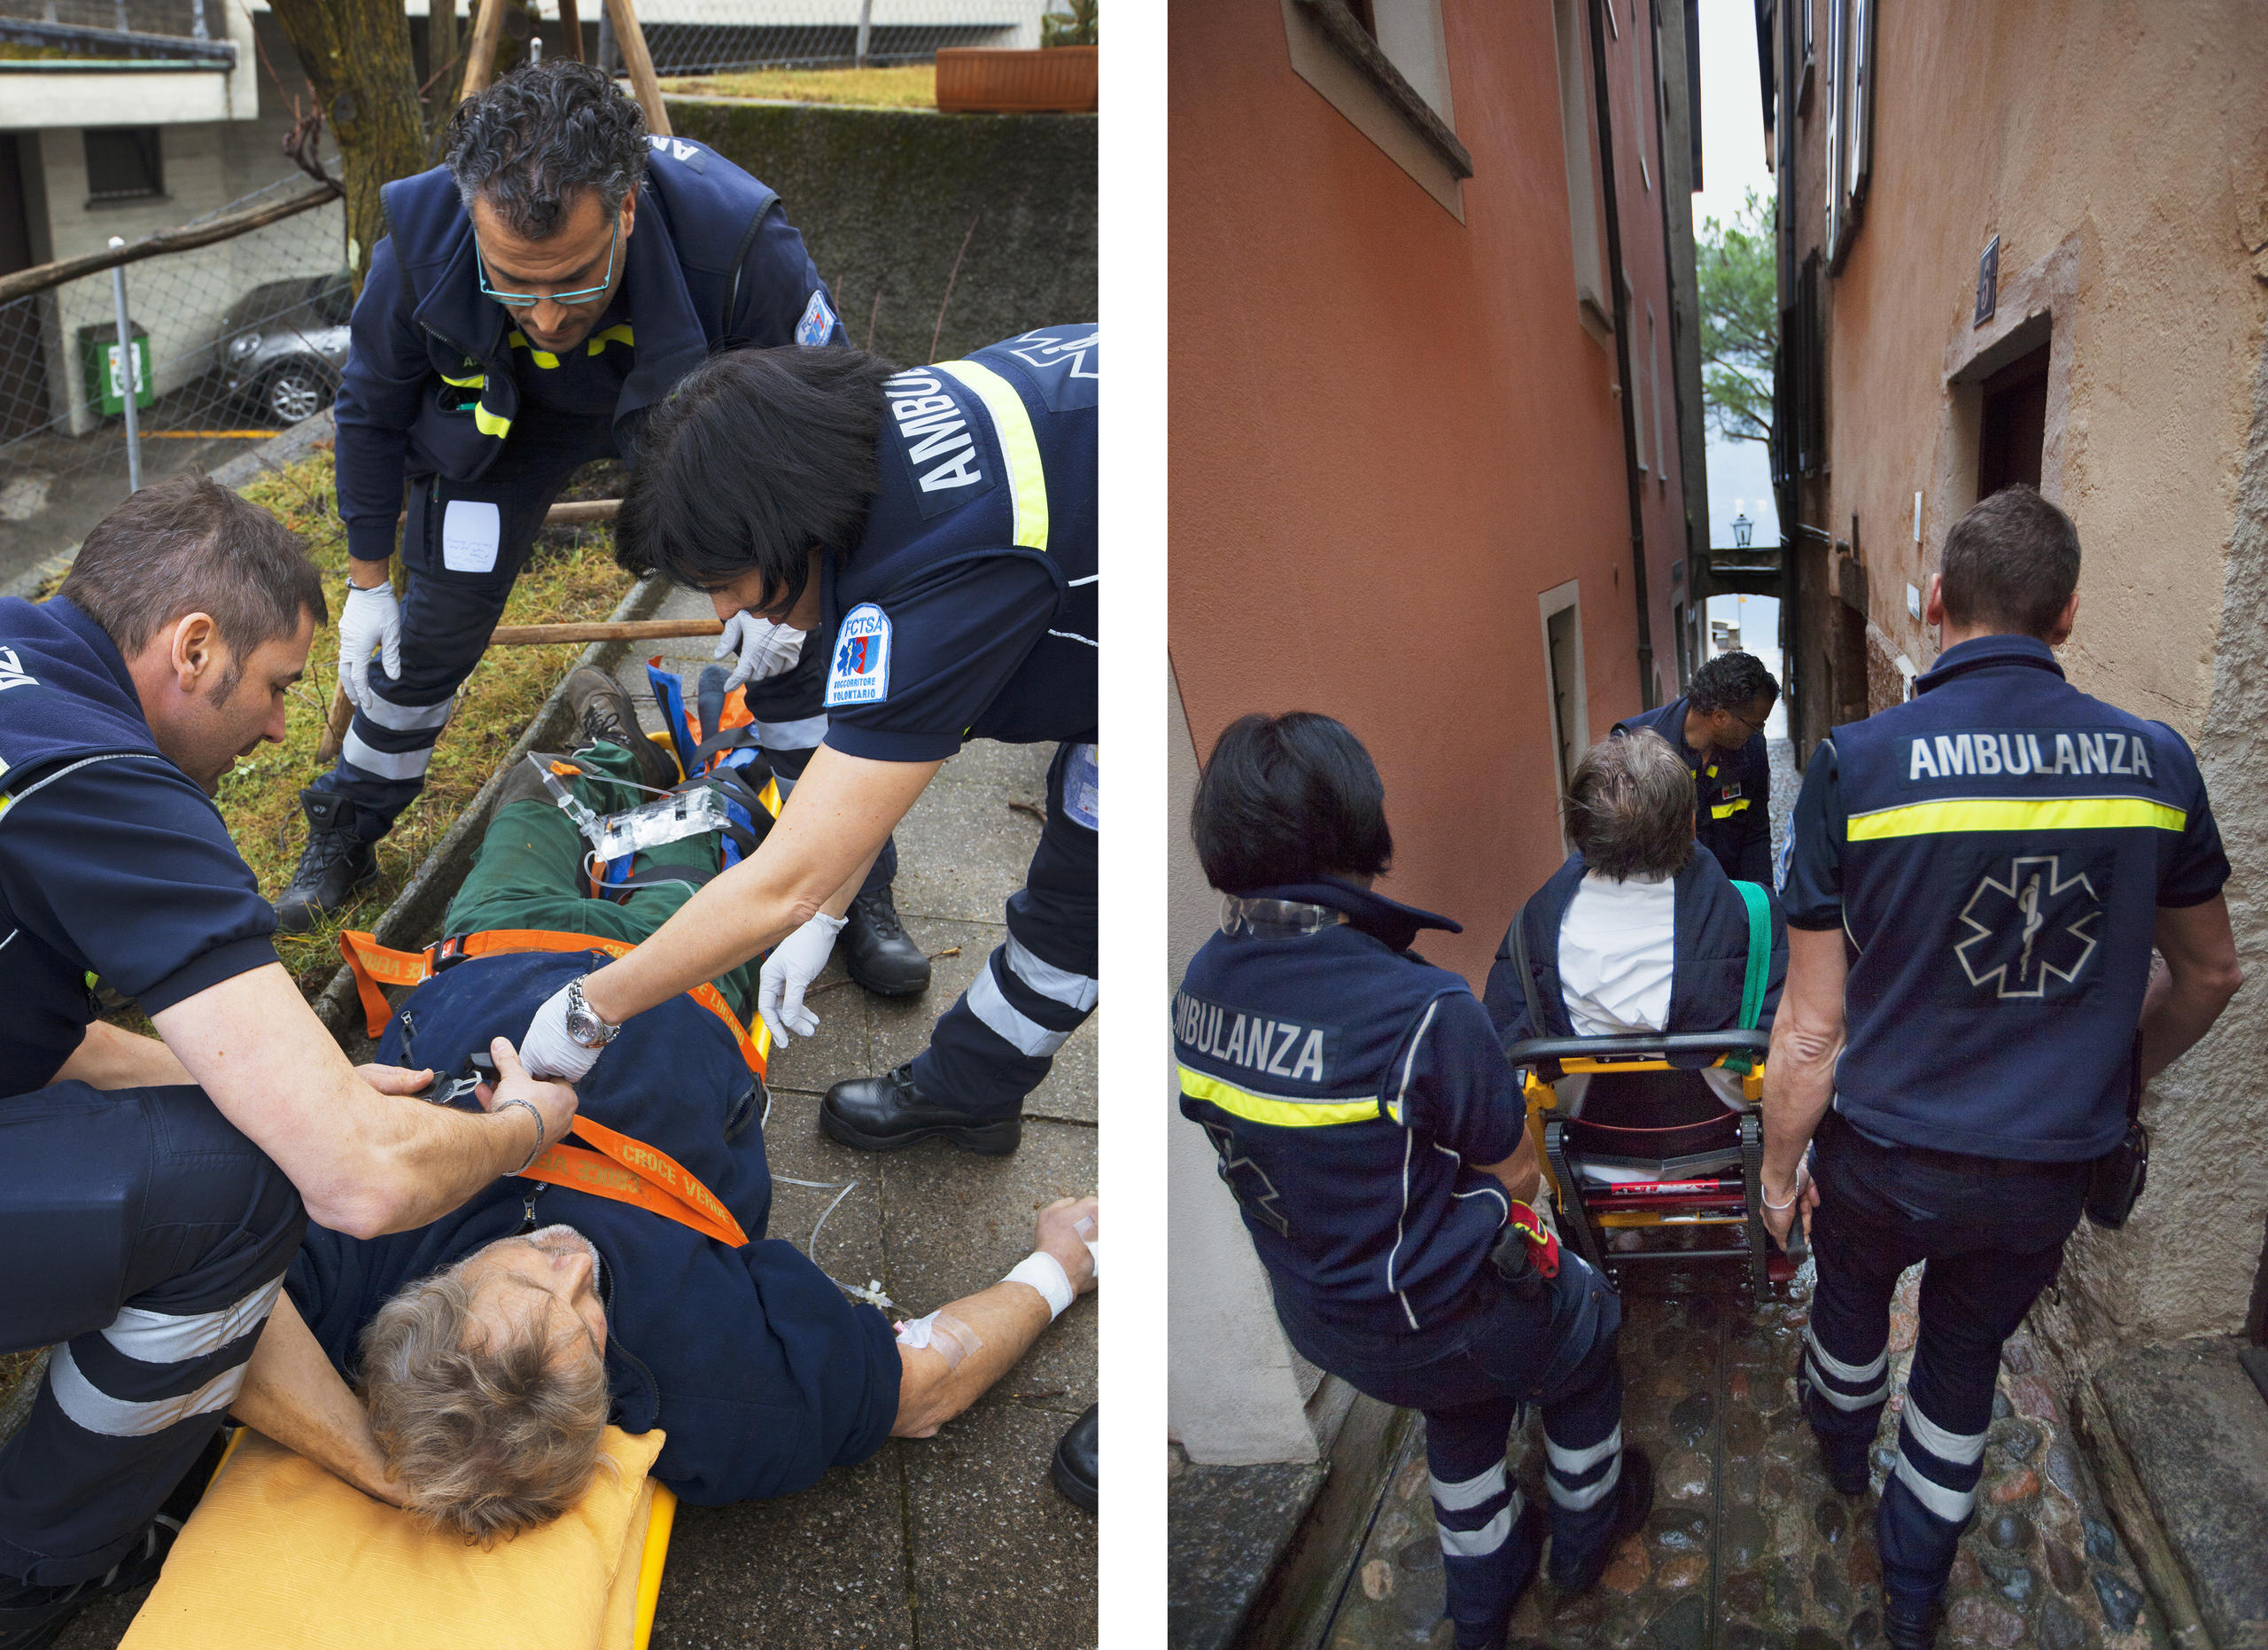 脚を折った男性を介抱する救急ボランティア